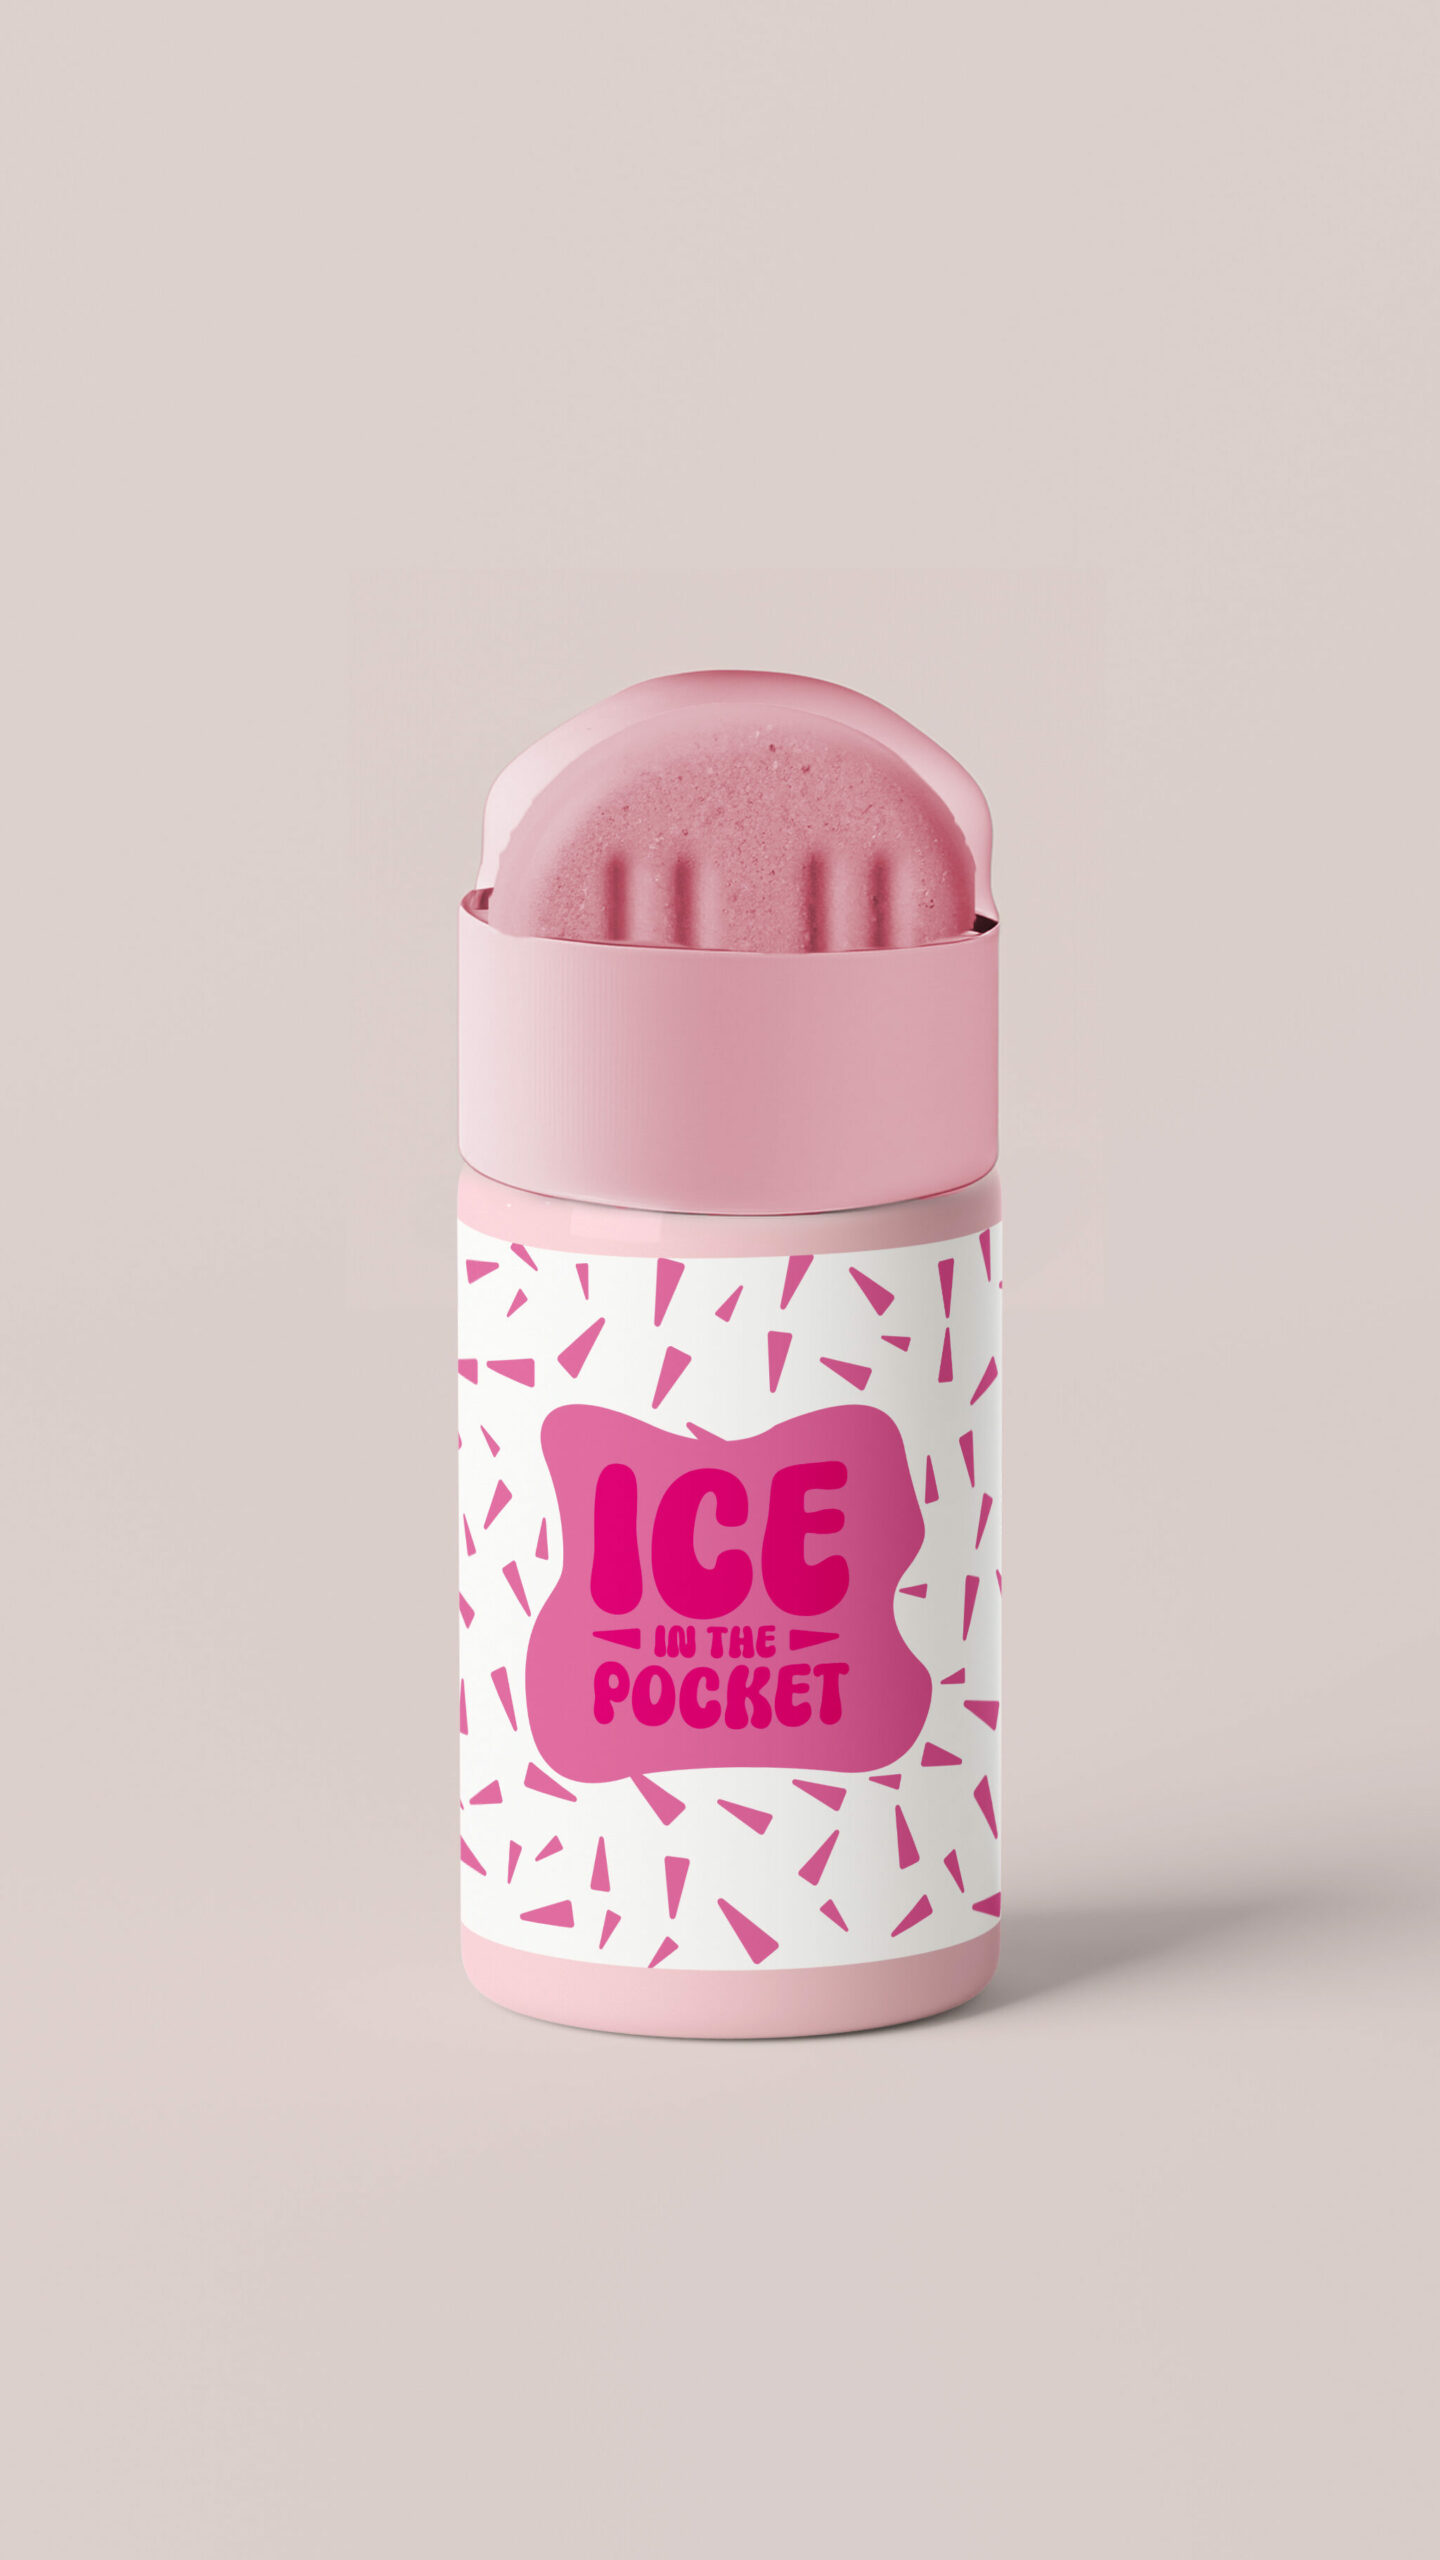 Mockup Ice in the pocket